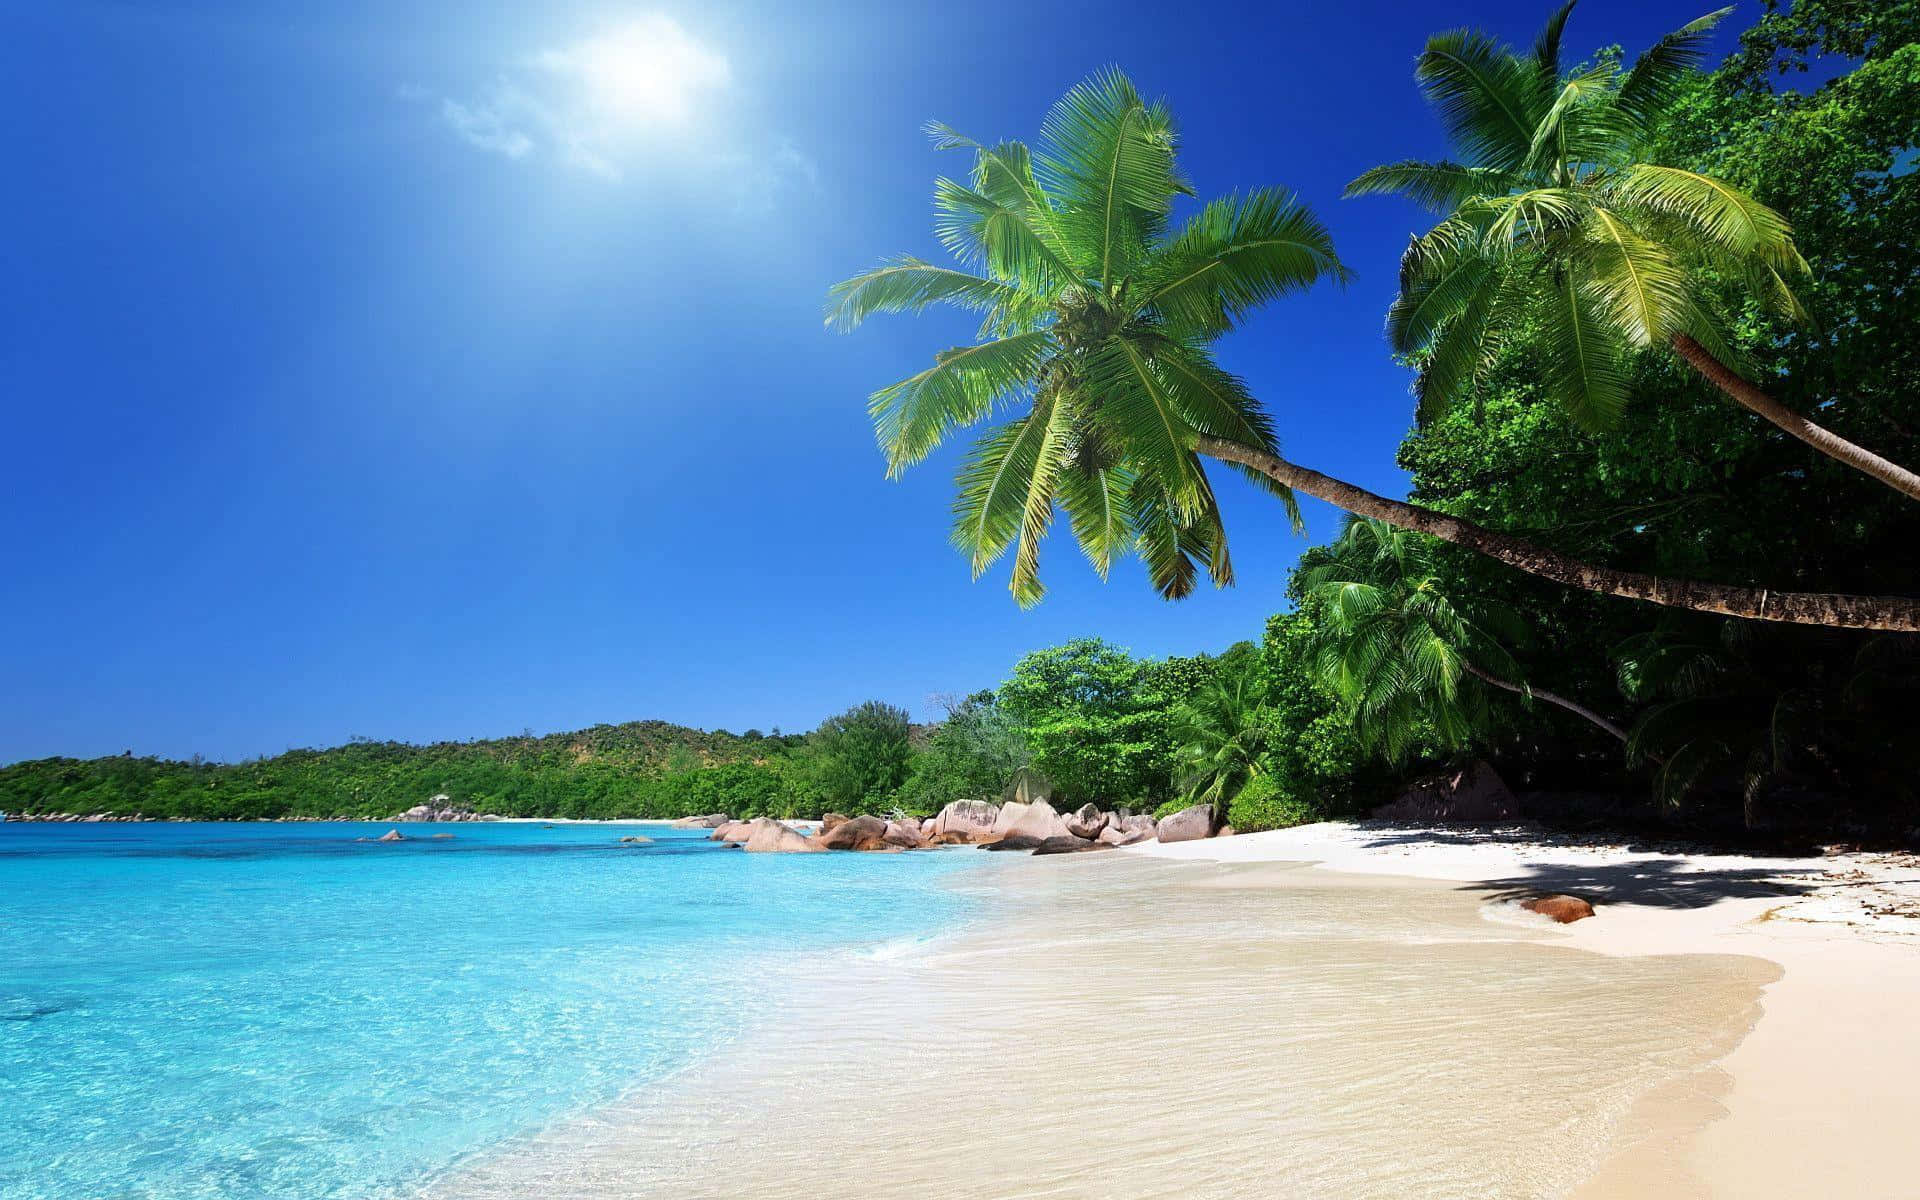 Nyd det smukke strand i Caribien. Wallpaper